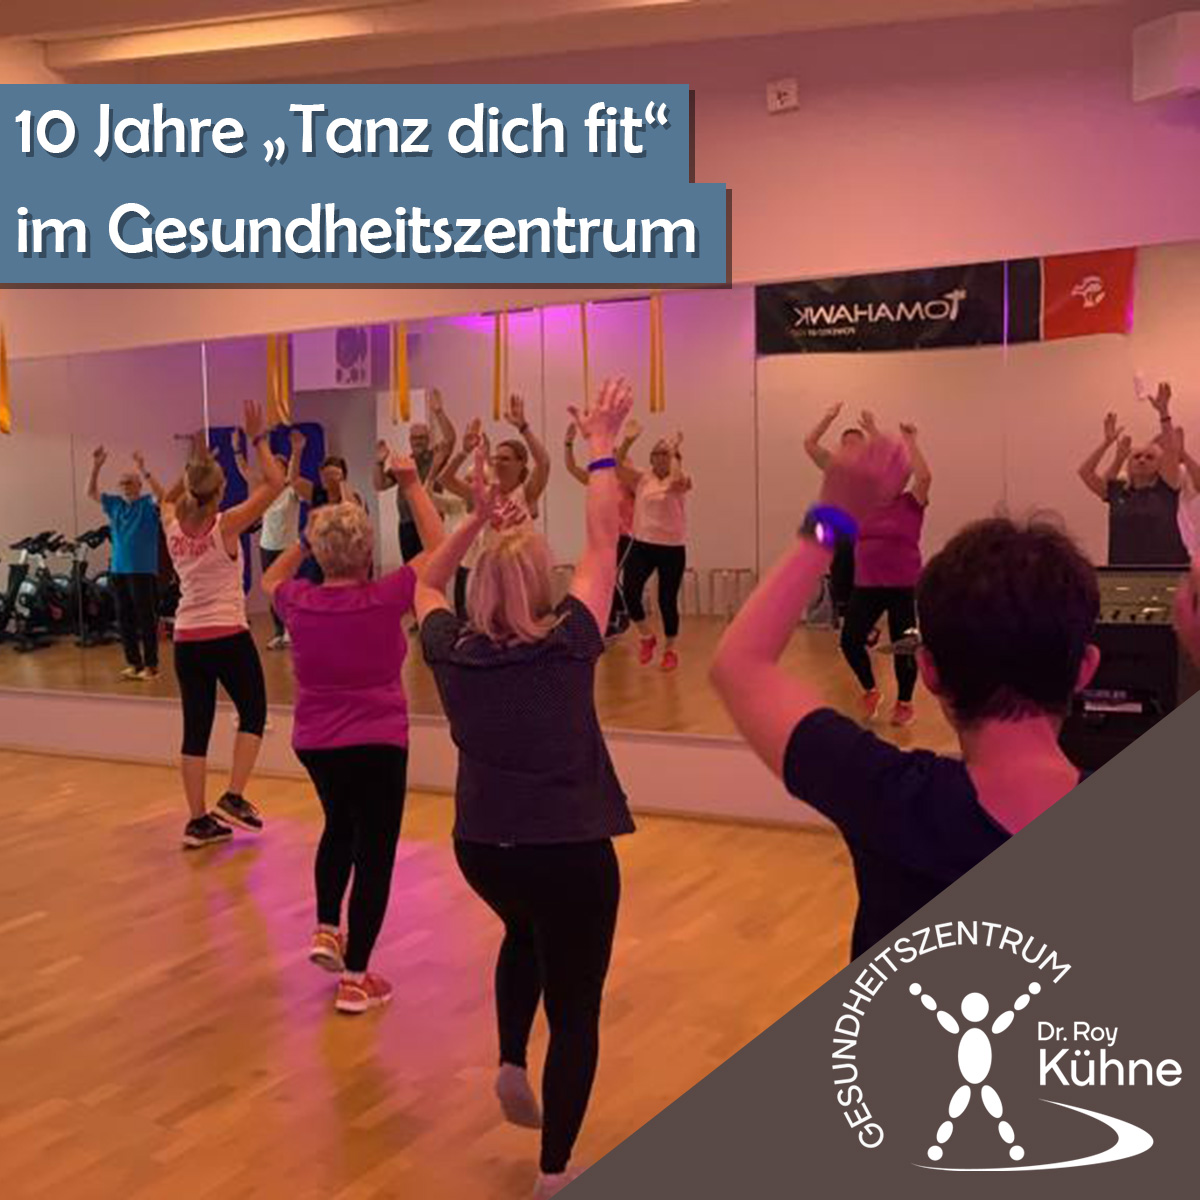 10 Jahre "Tanz dich fit" mit Melanie im Gesundheitszentrum Dr. Roy Kühne in Northeim